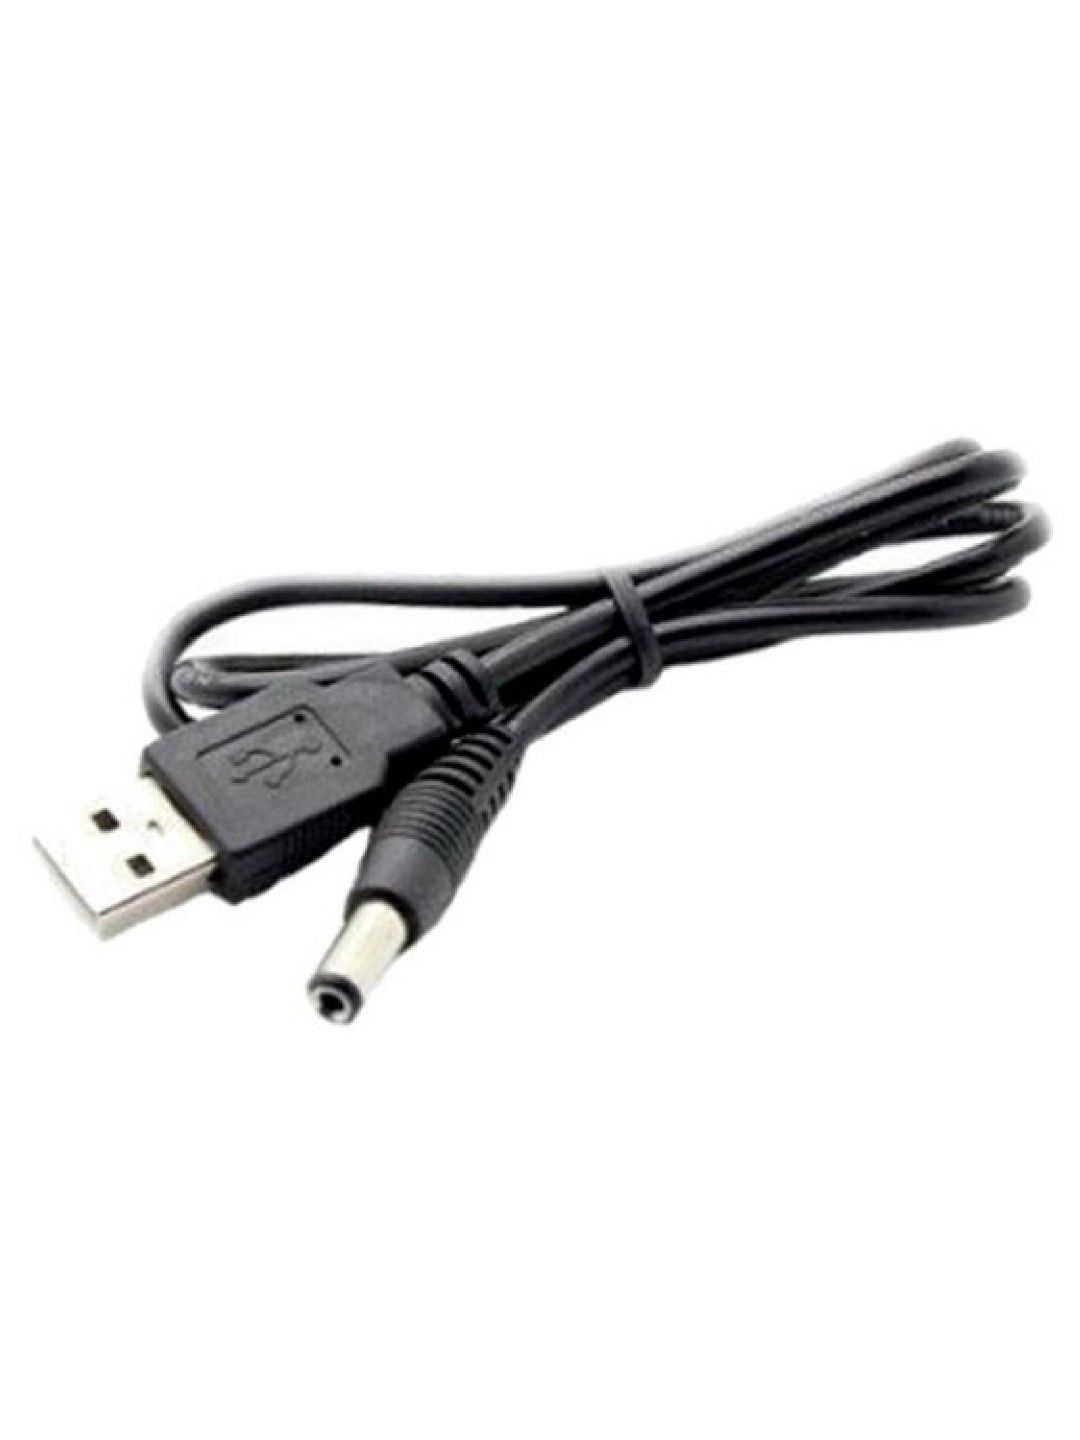 Horigen USB Cable (Black)